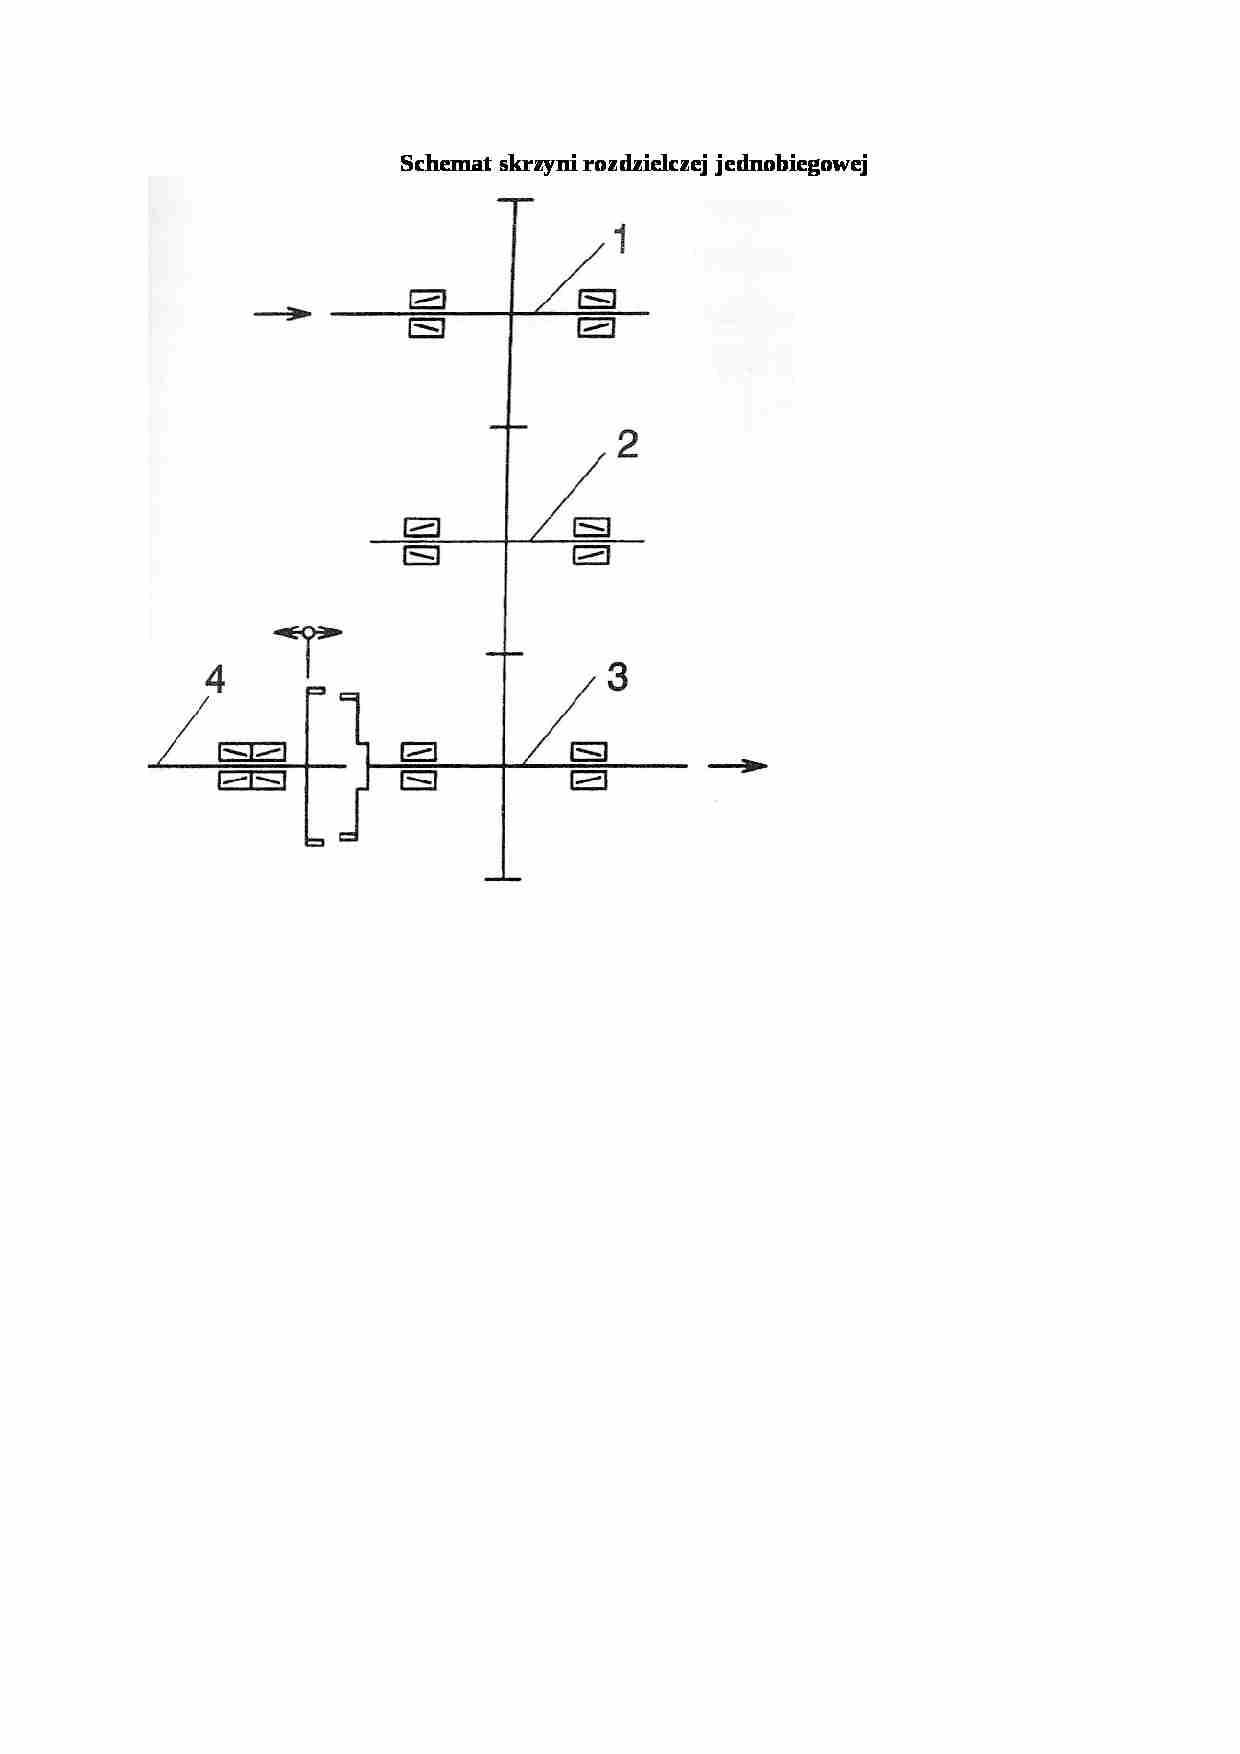 Schemat skrzyni rozdzielczej jednobiegowej - strona 1